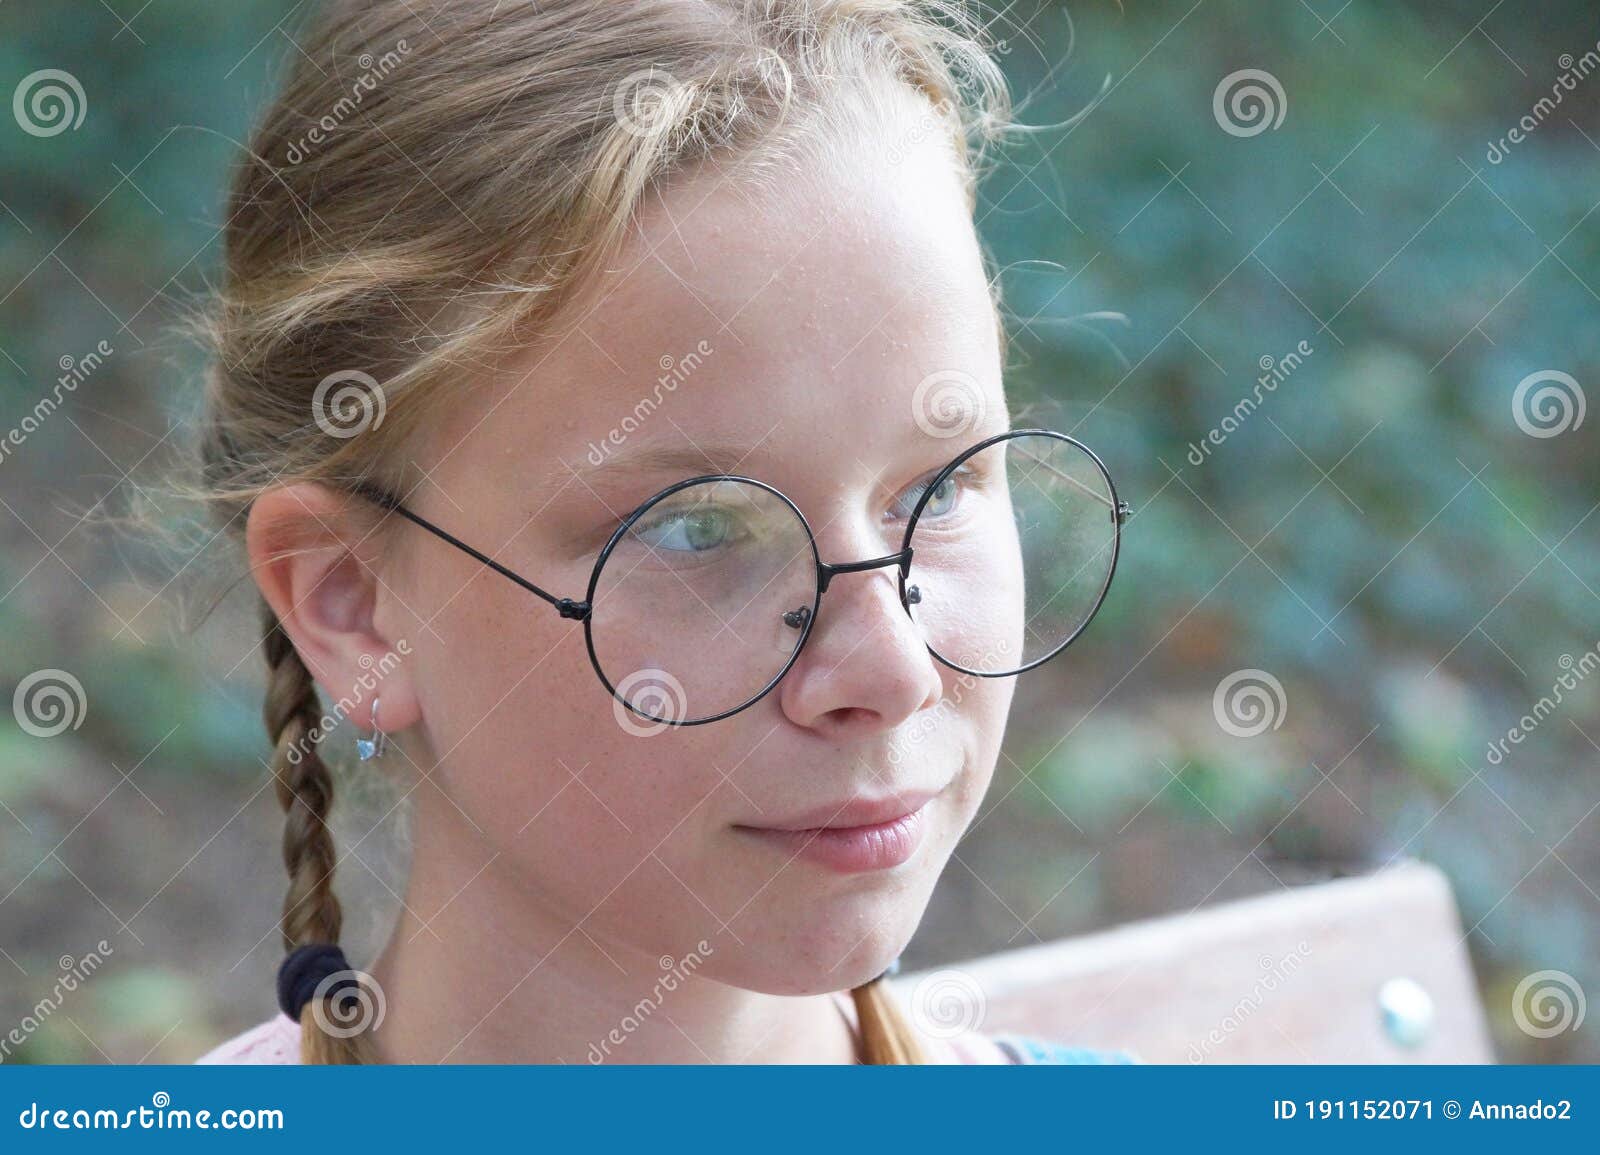 戴眼镜的女孩子 - 堆糖，美图壁纸兴趣社区